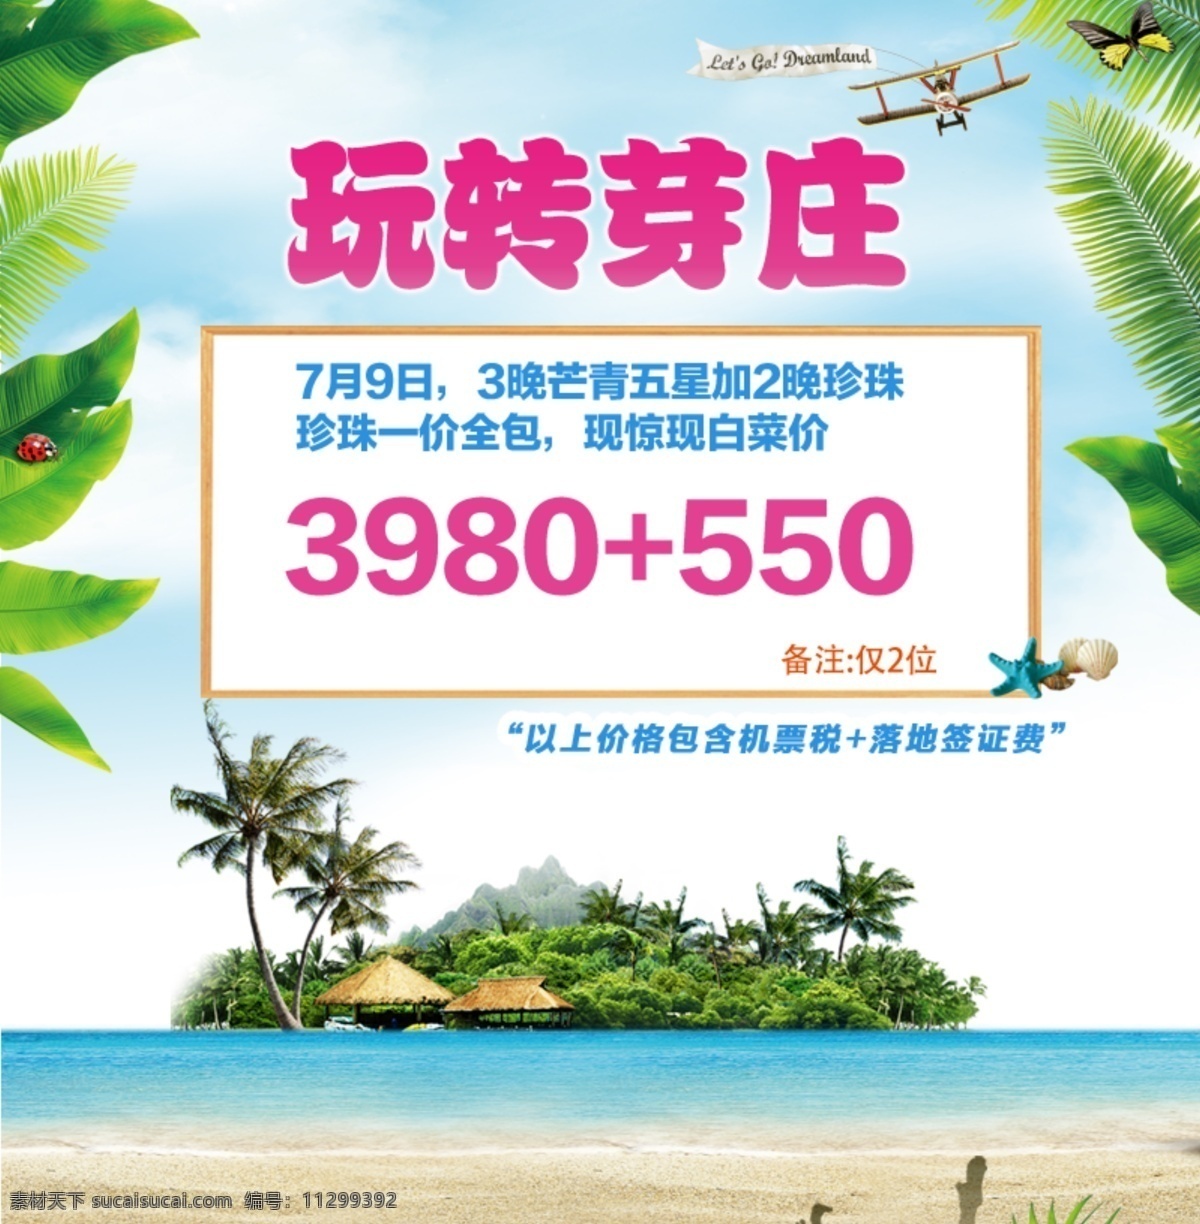 玩转芽庄 海岛旅游 旅游价格 岛屿 红色 飞机 椰子树 海滩 贝壳